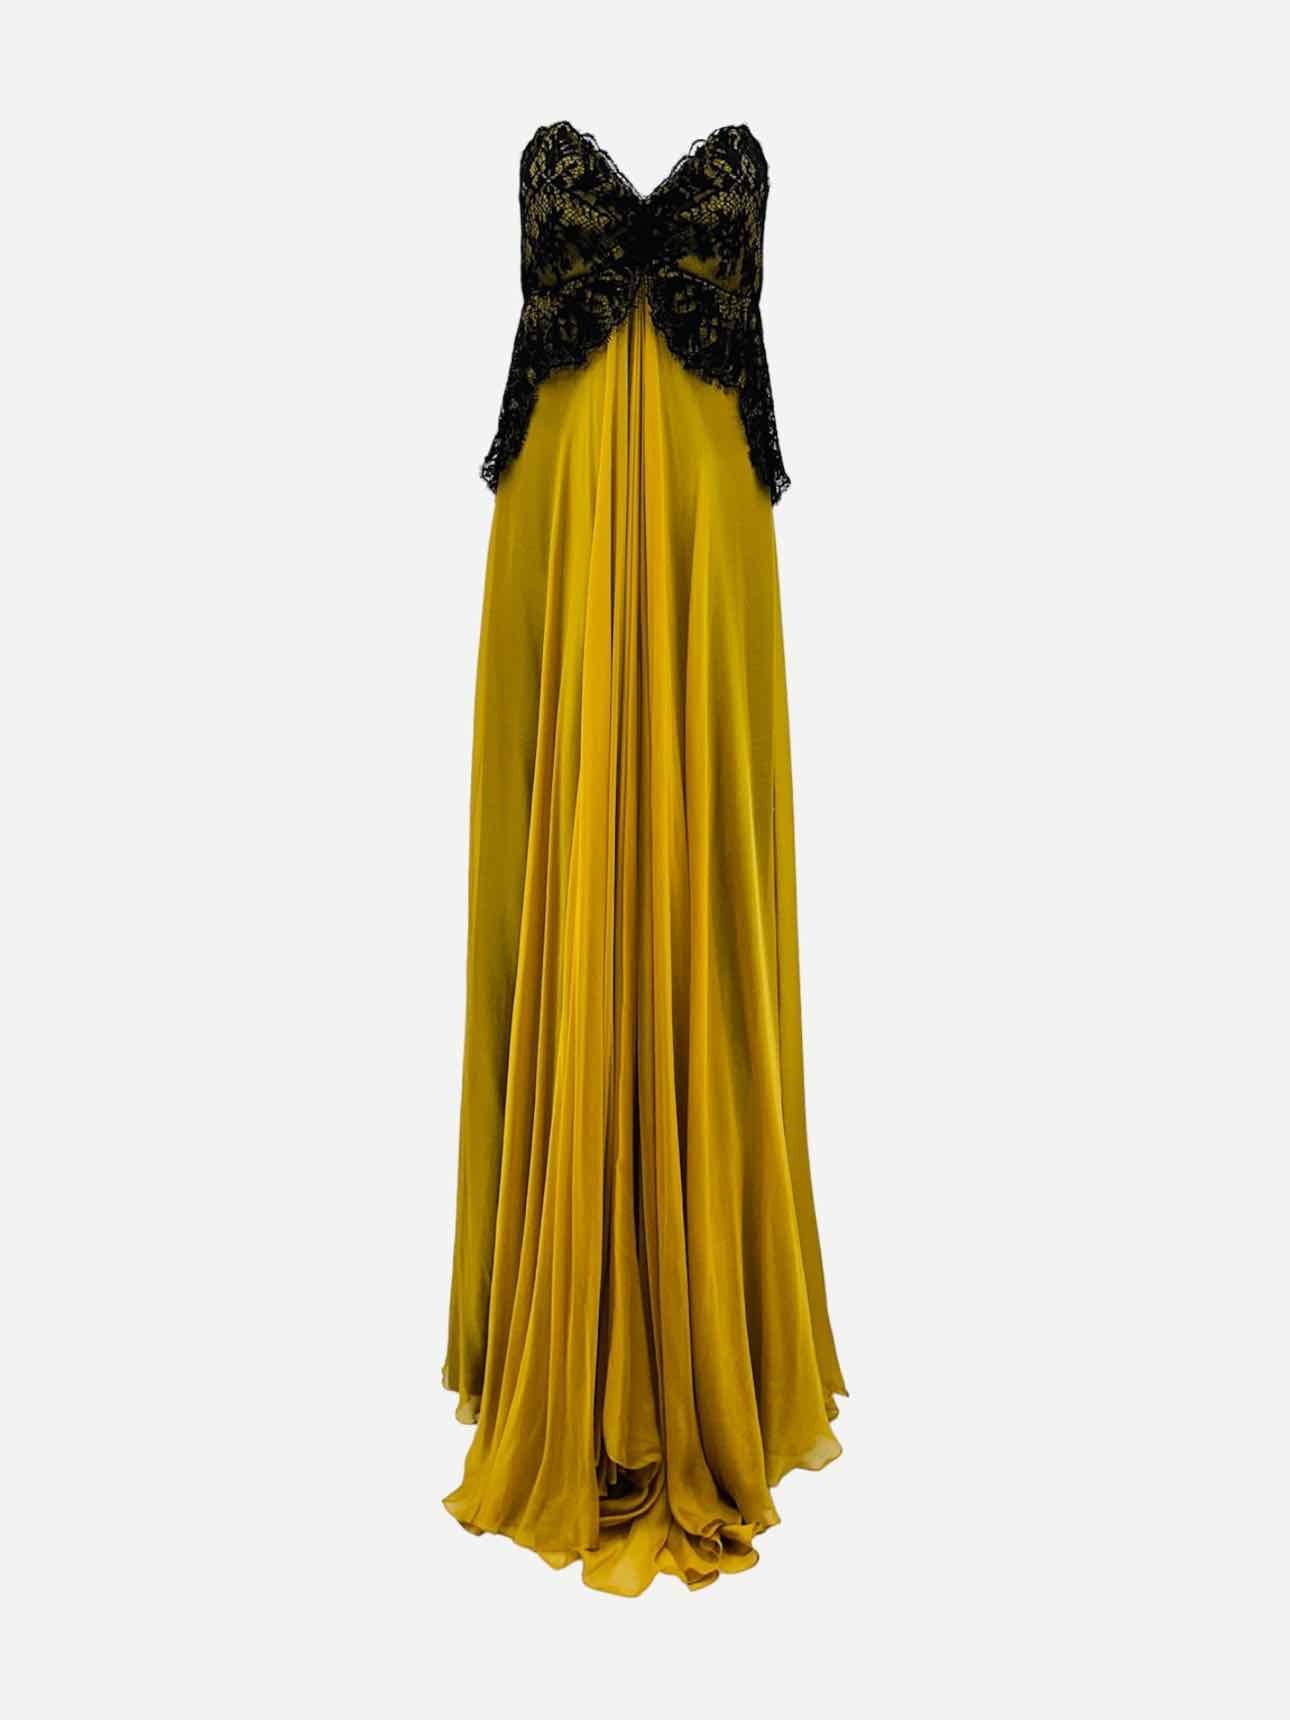 MARIA LUCIANA HOHAN Gold & Black Evening Dress